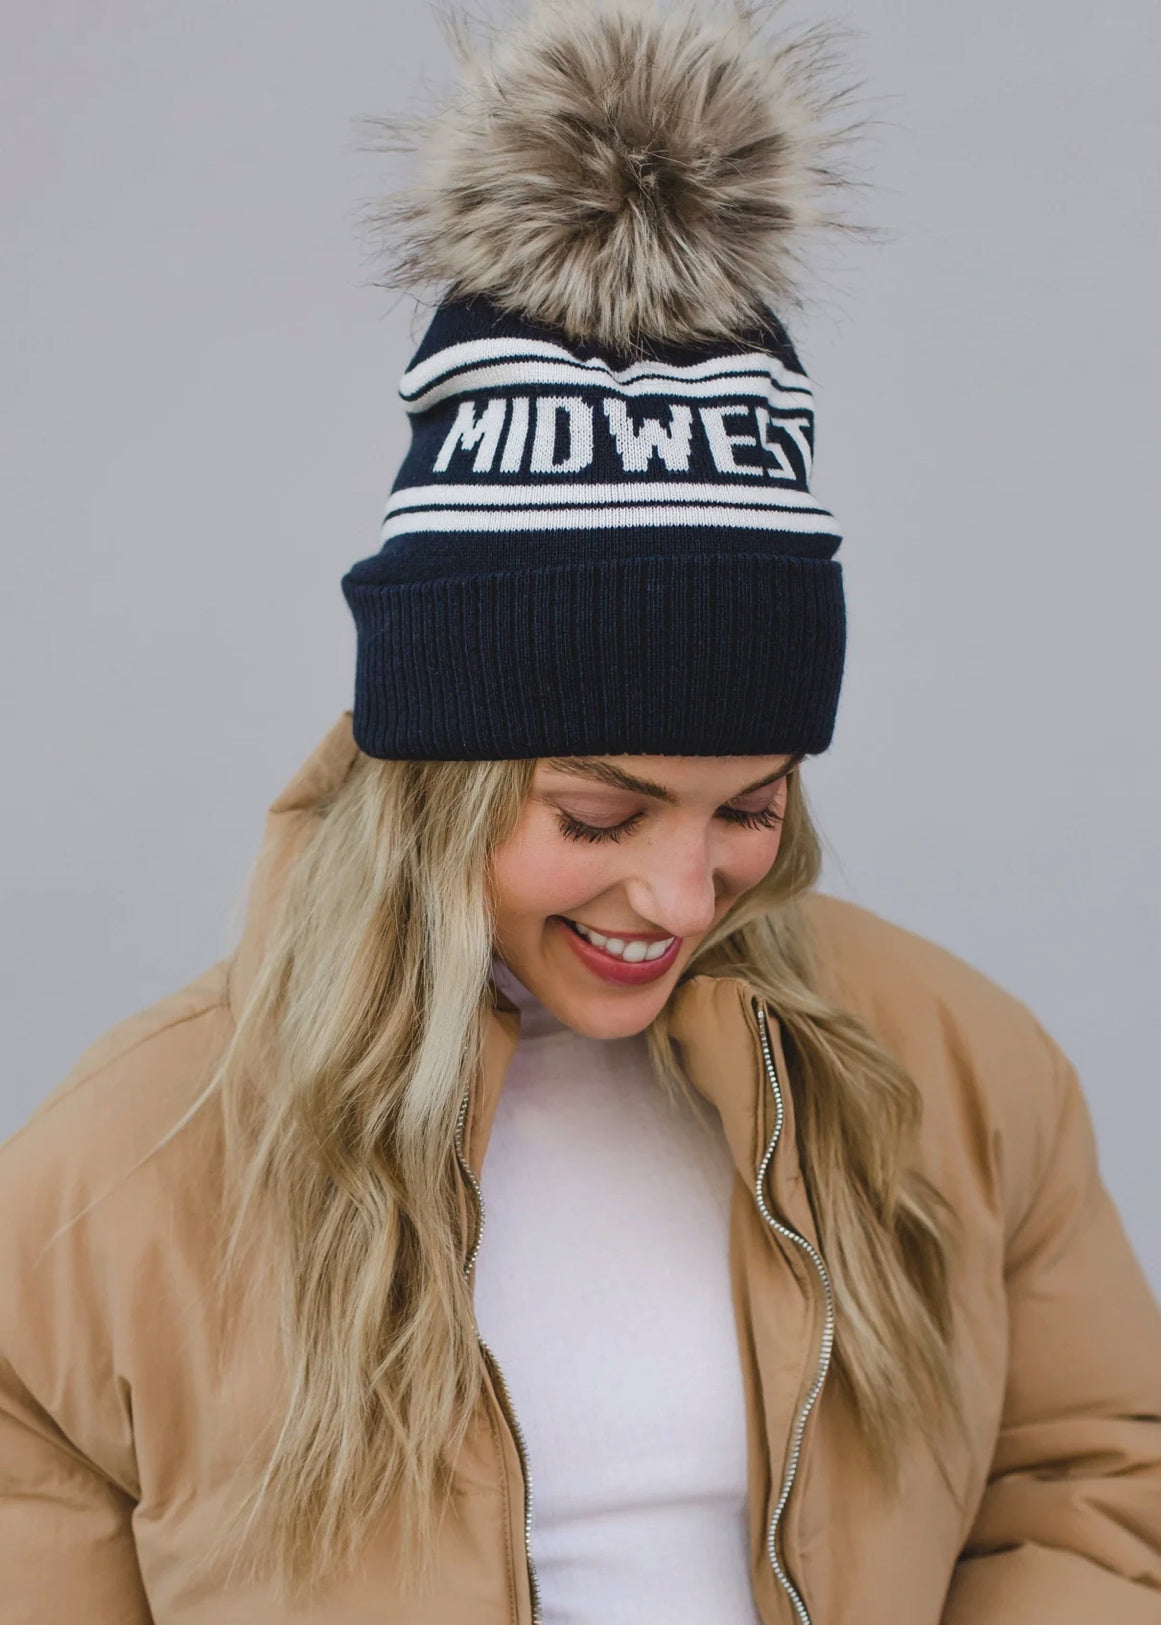 Midwest Pom Pom Hat